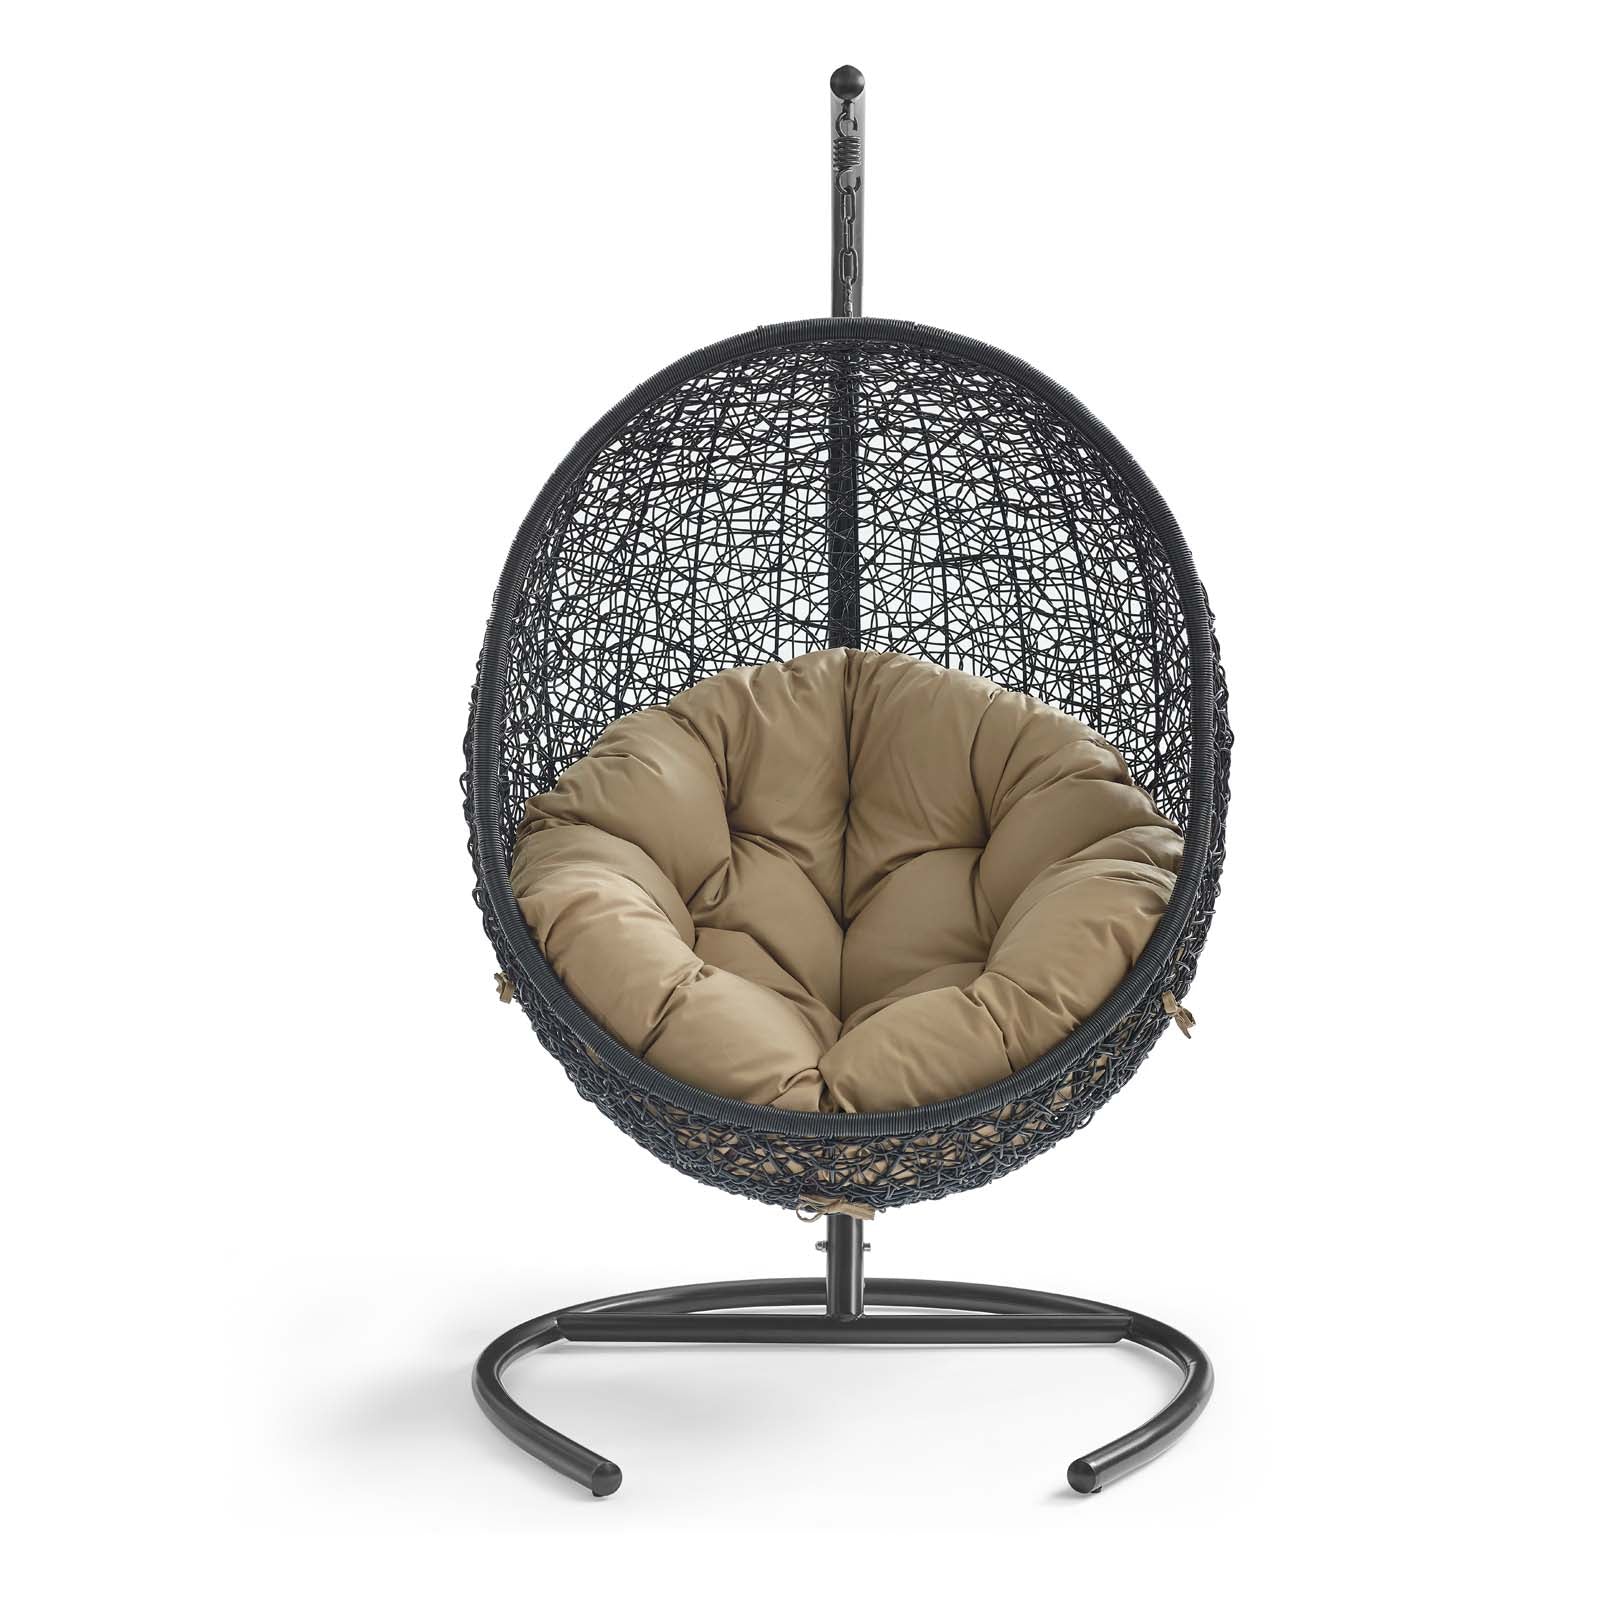 Modway Outdoor Swings - Encase Swing Outdoor Patio Lounge Chair Mocha